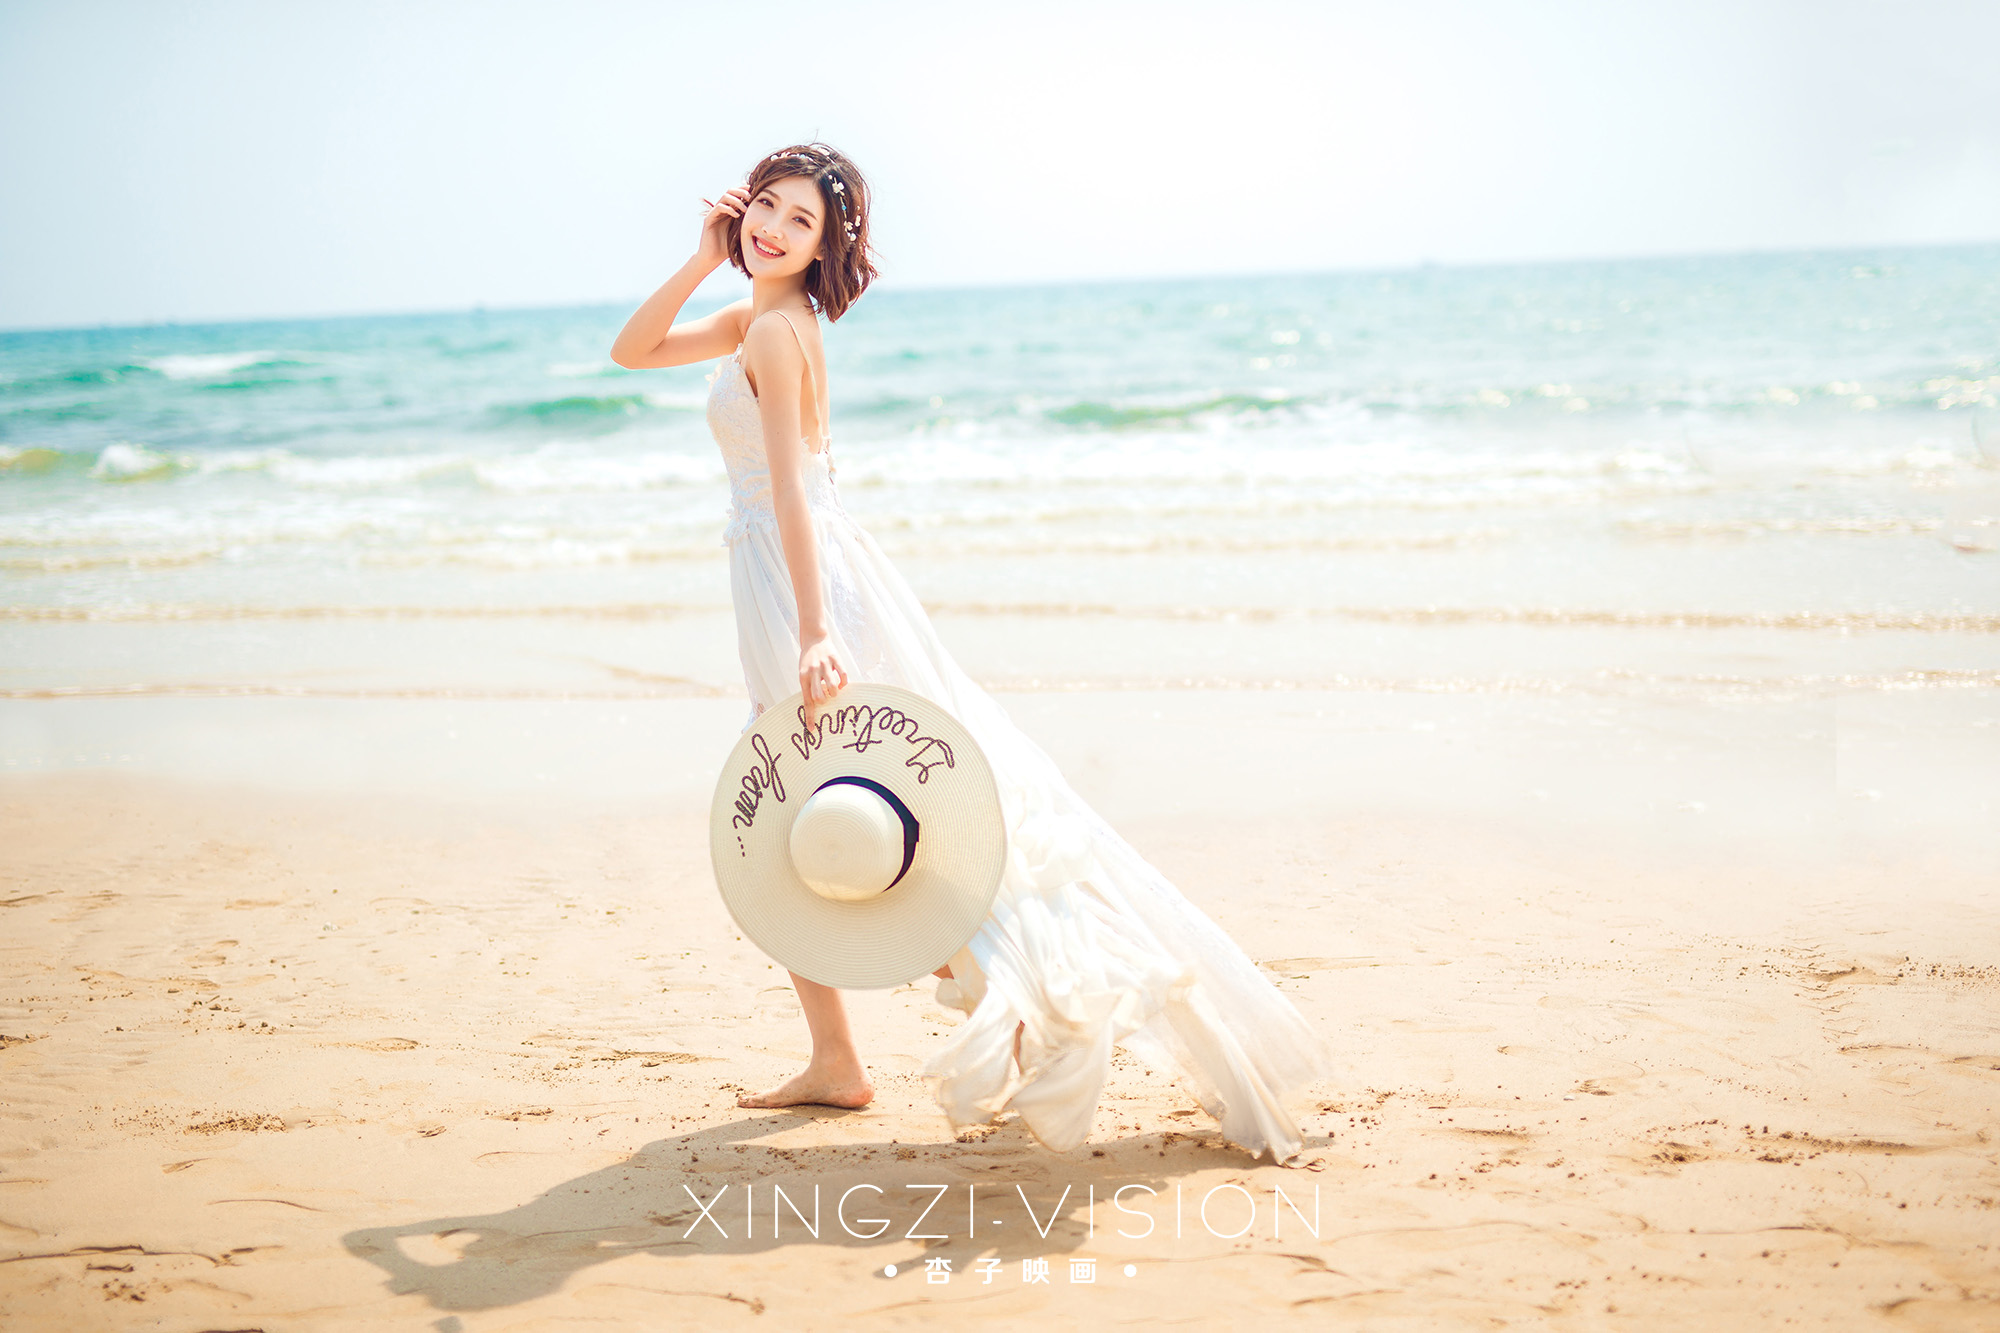 九洲岛《沙滩比基尼》 - 拍摄地 - 广州婚纱摄影-广州古摄影官网